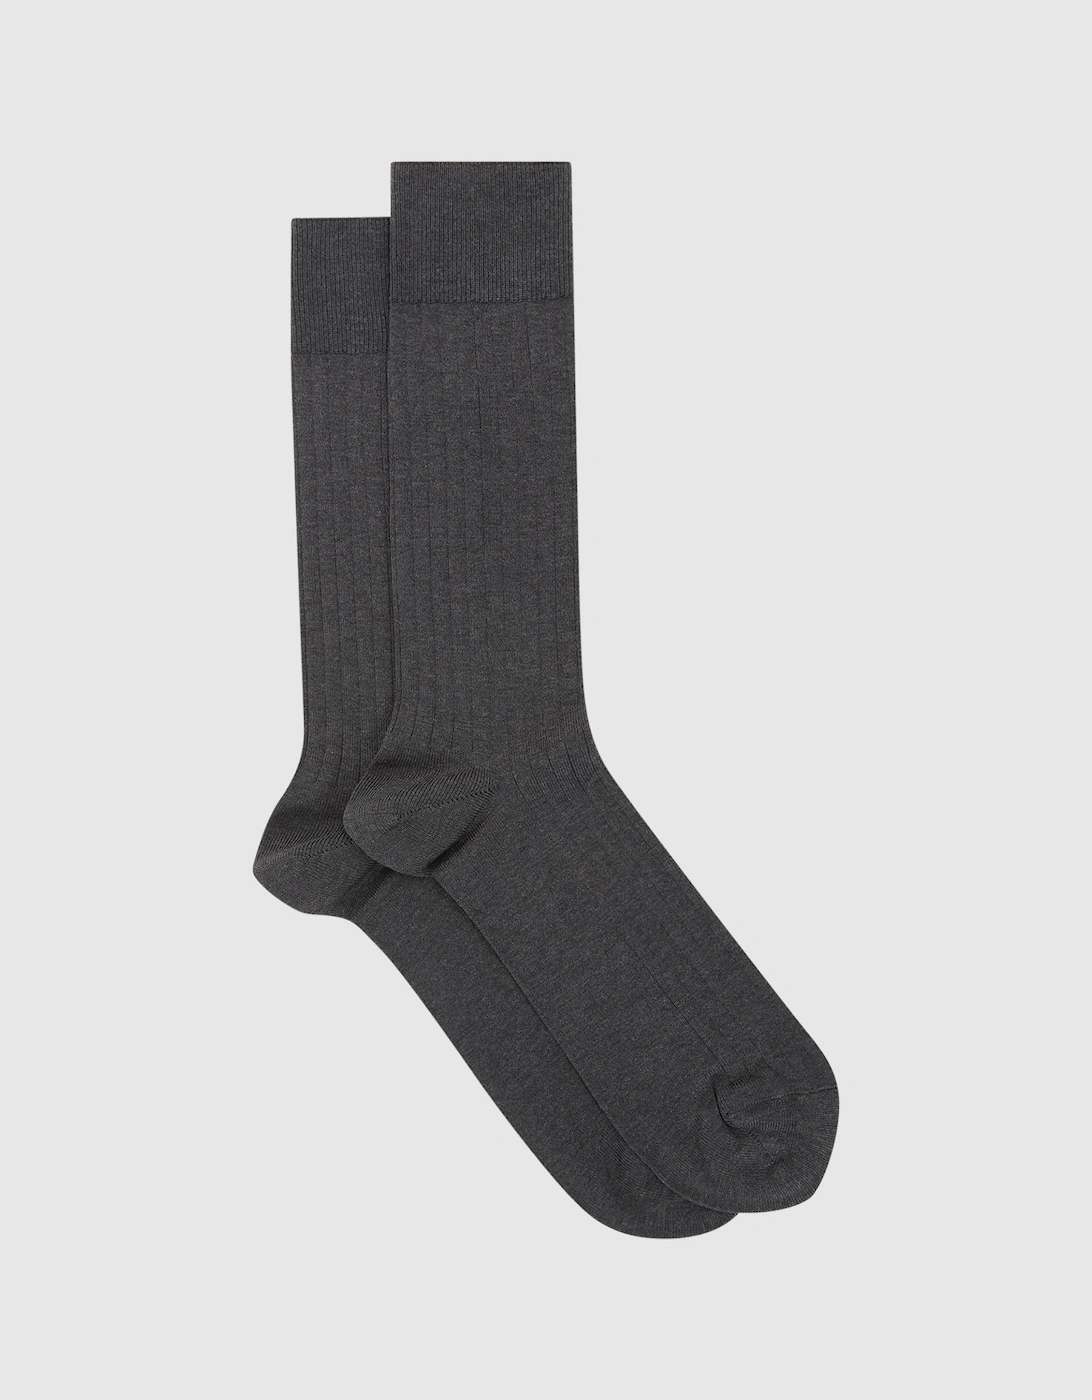 Ribbed Socks, 2 of 1